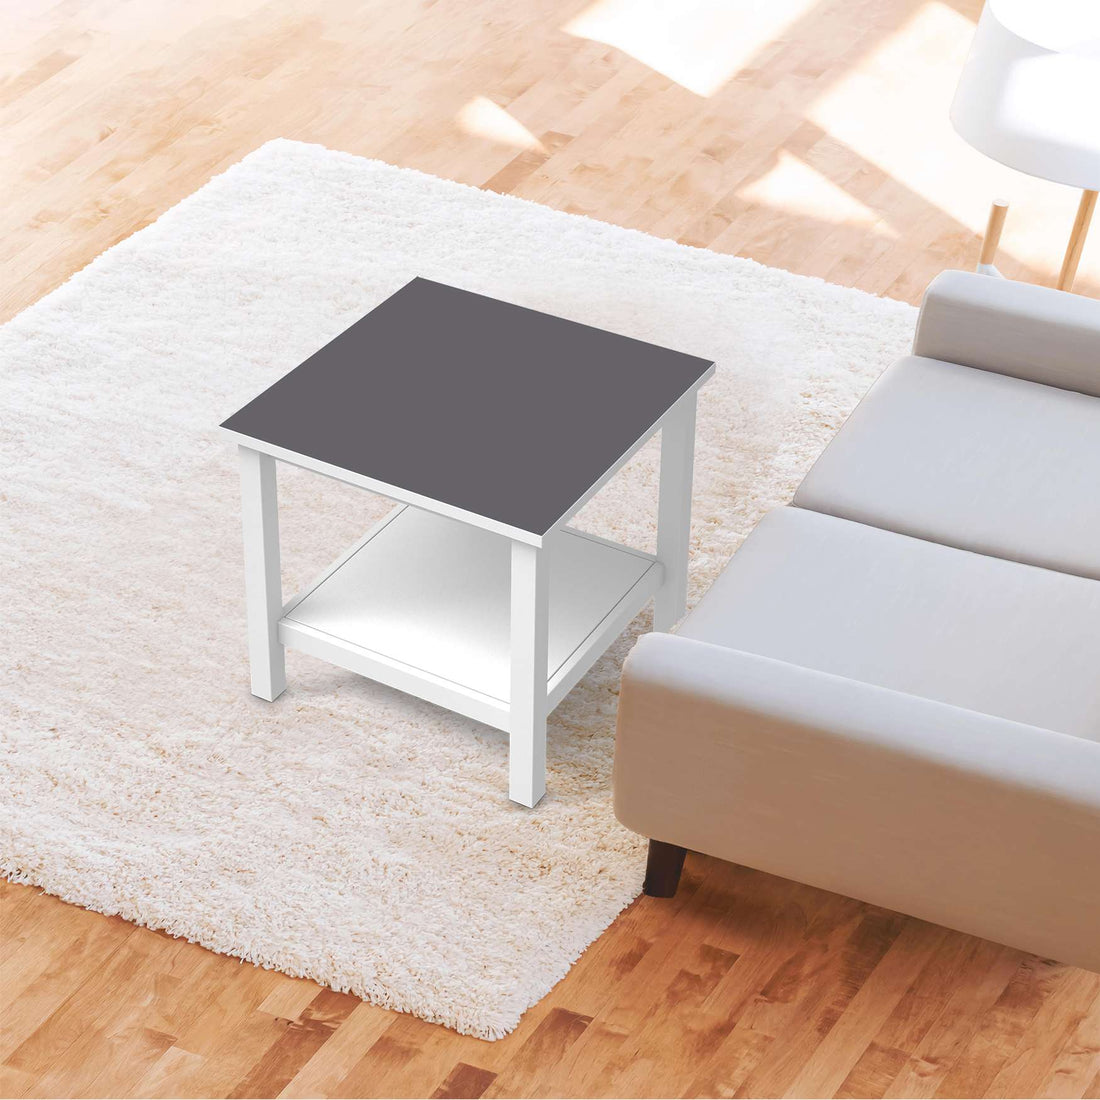 Möbel Klebefolie Grau Light - IKEA Hemnes Beistelltisch 55x55 cm - Wohnzimmer